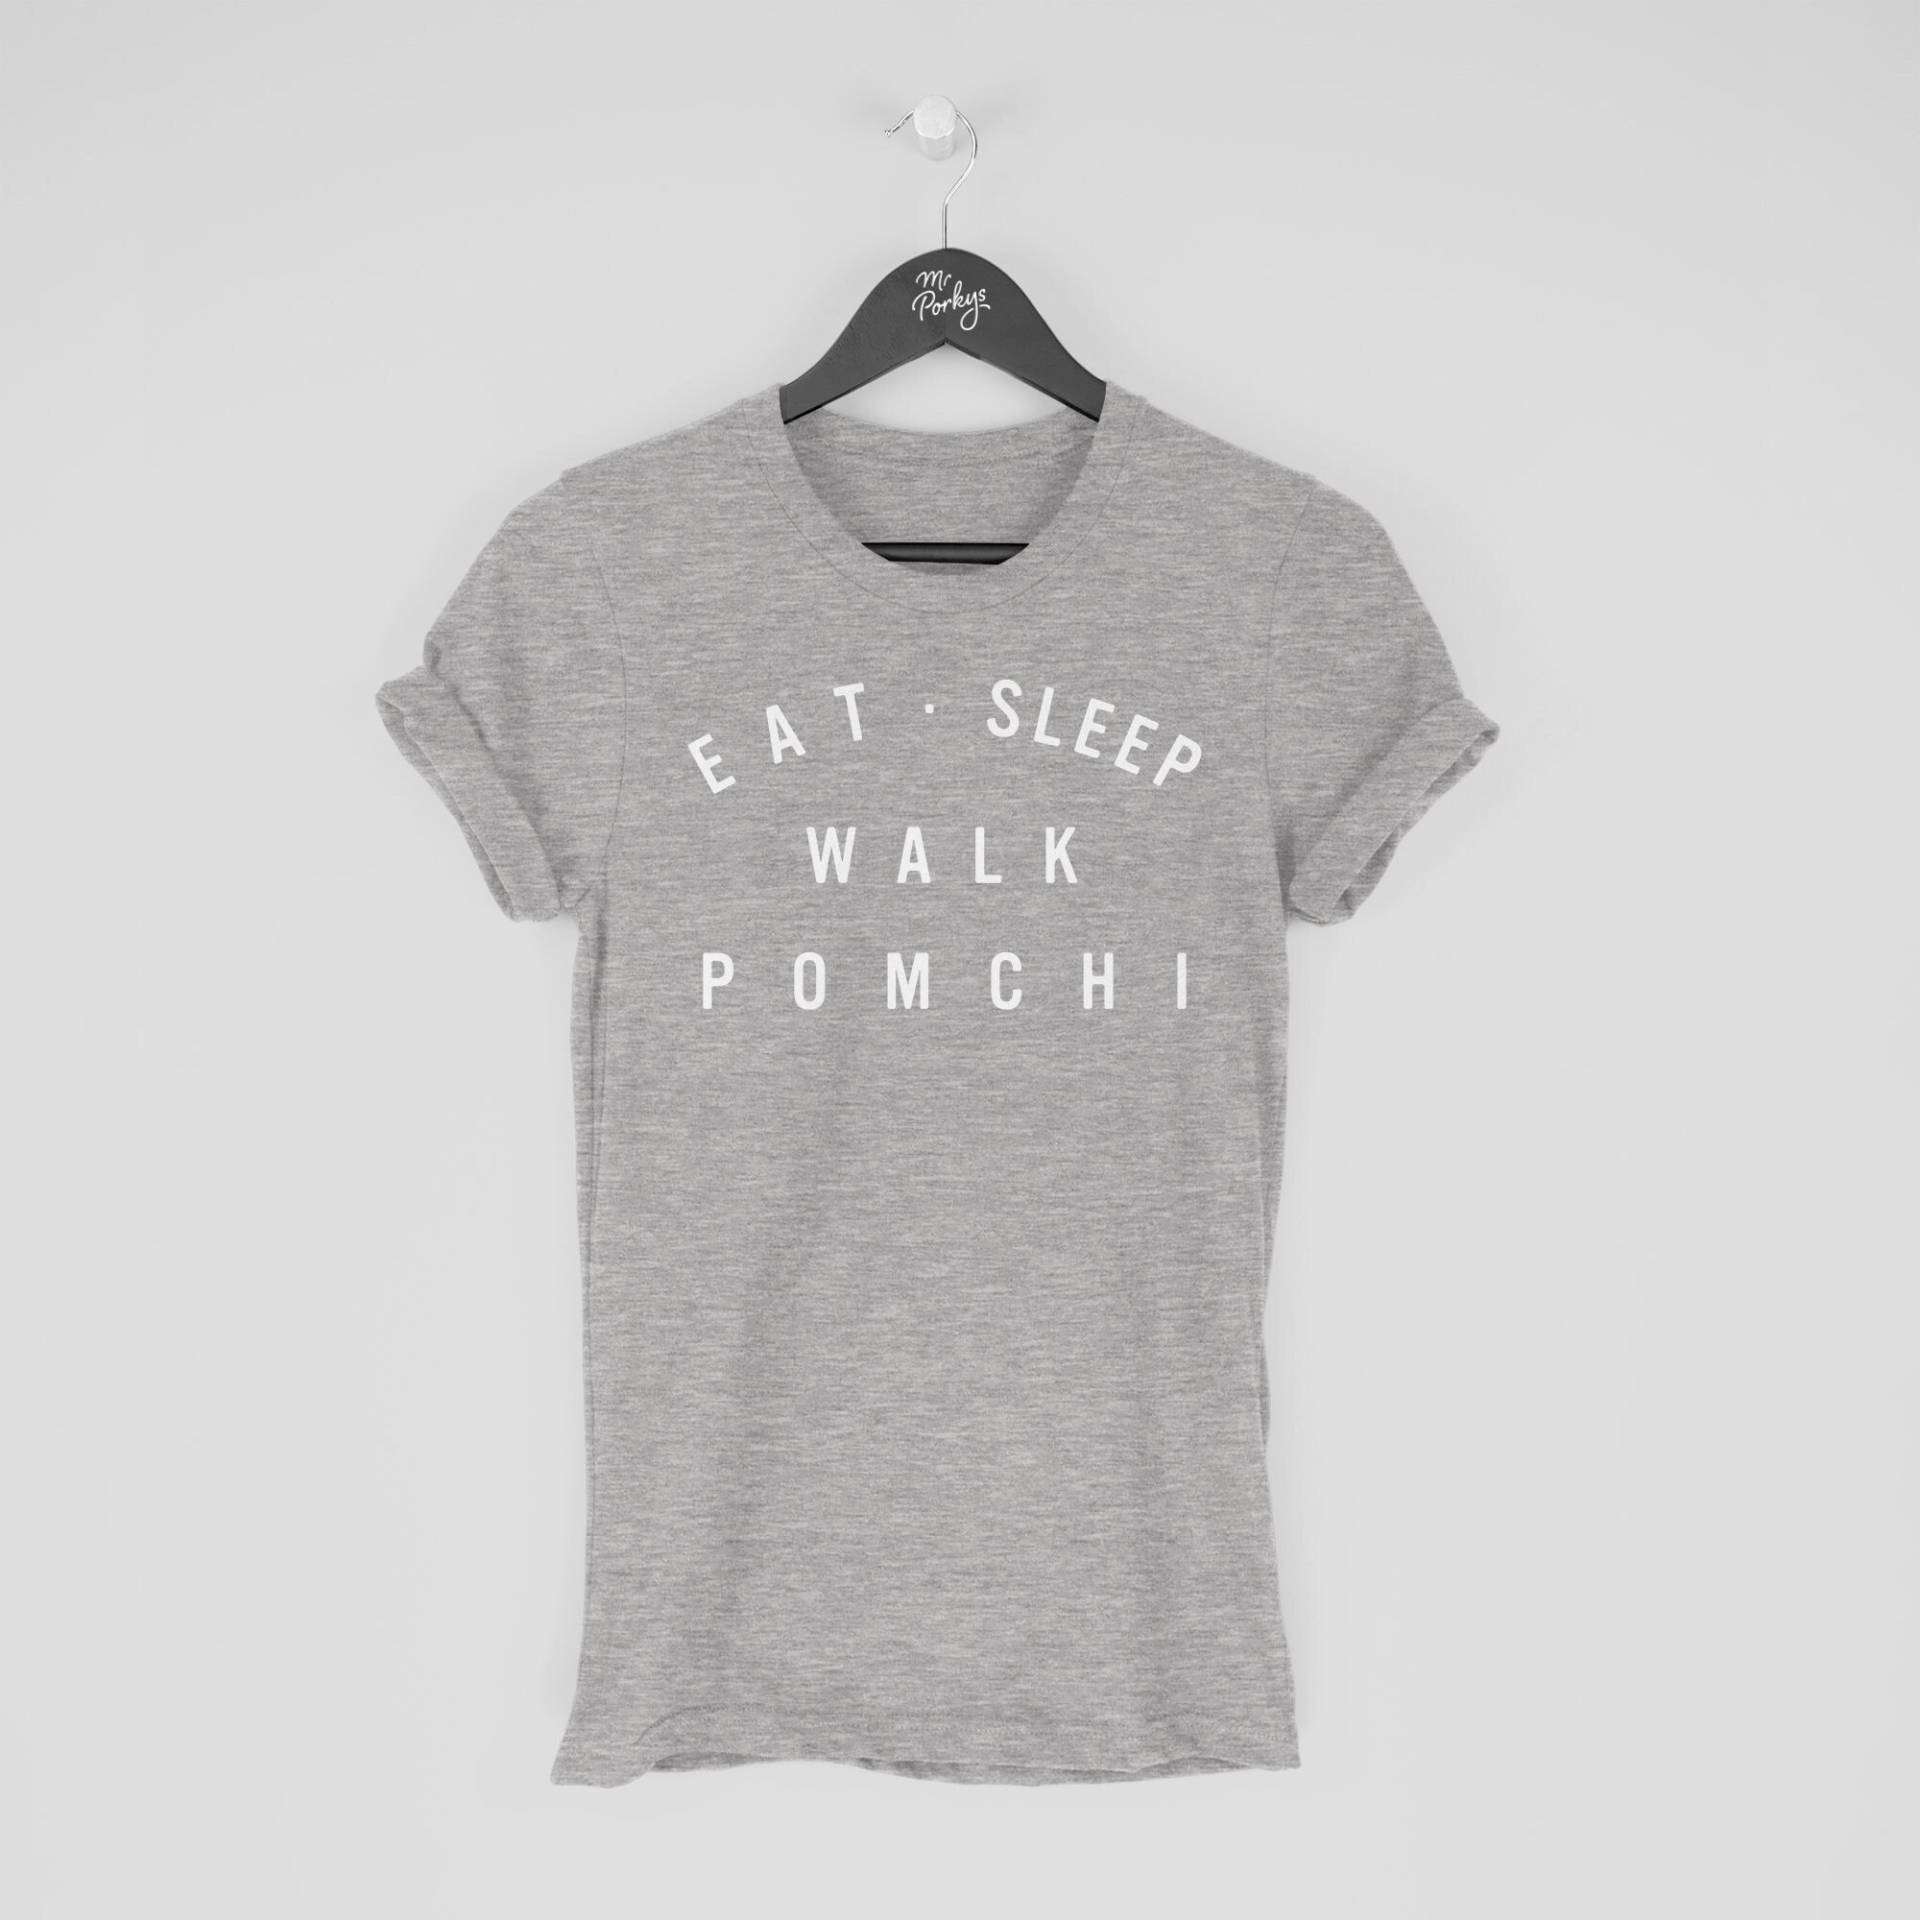 Pomchi Shirt, Eat Sleep Walk T-Shirt, Geschenk Für Besitzer, Tshirt von MrPorkysGiftShop